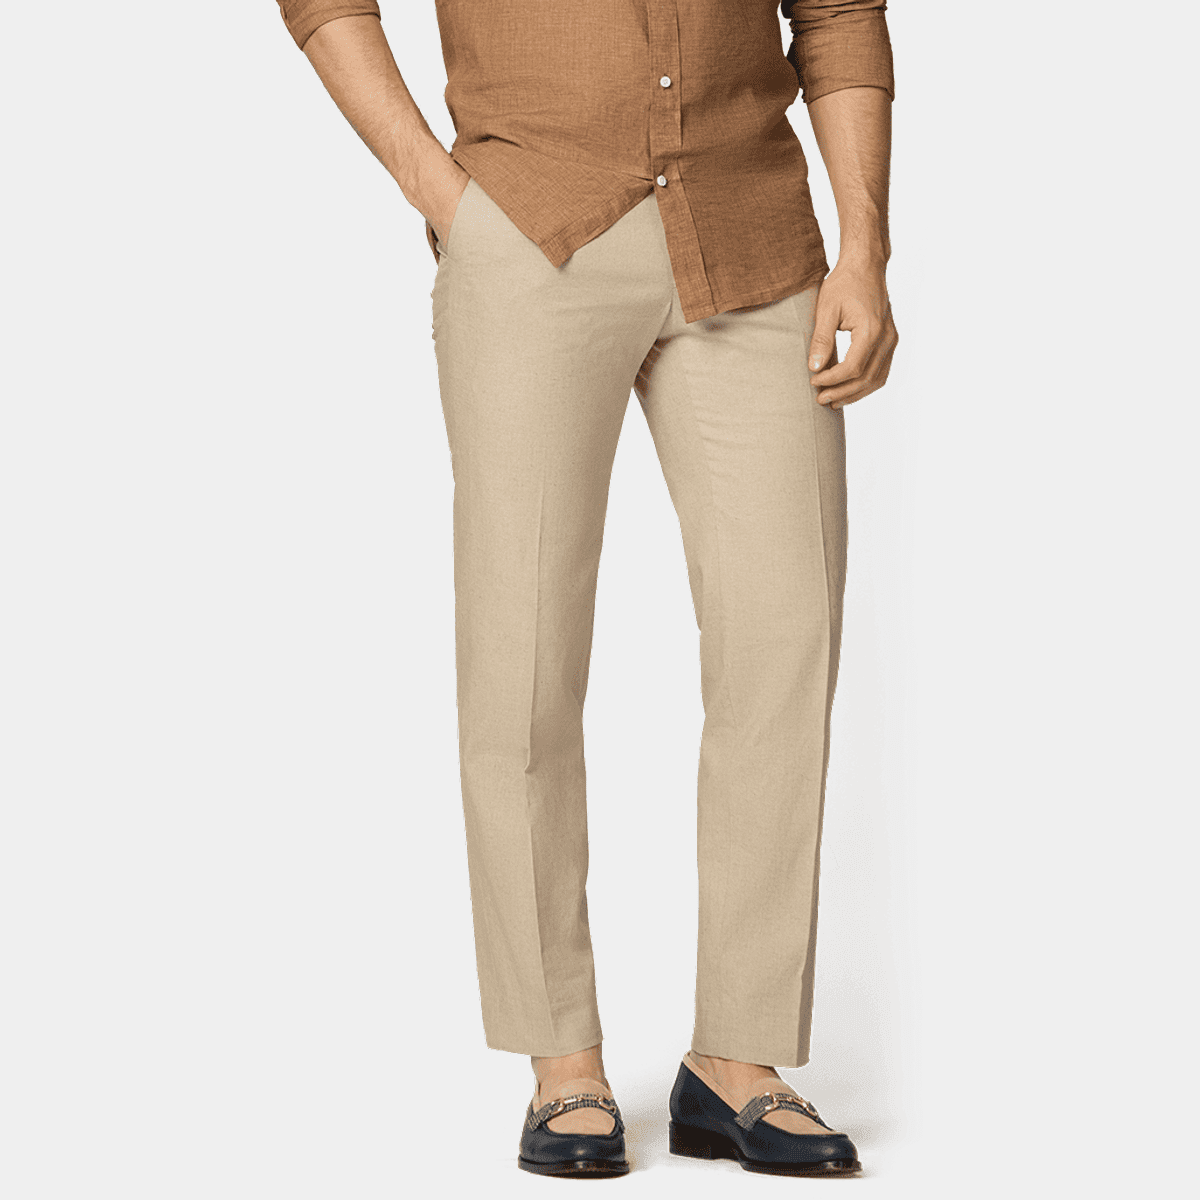 Pantalón de Lino Generra 318302 color Beige para Hombre